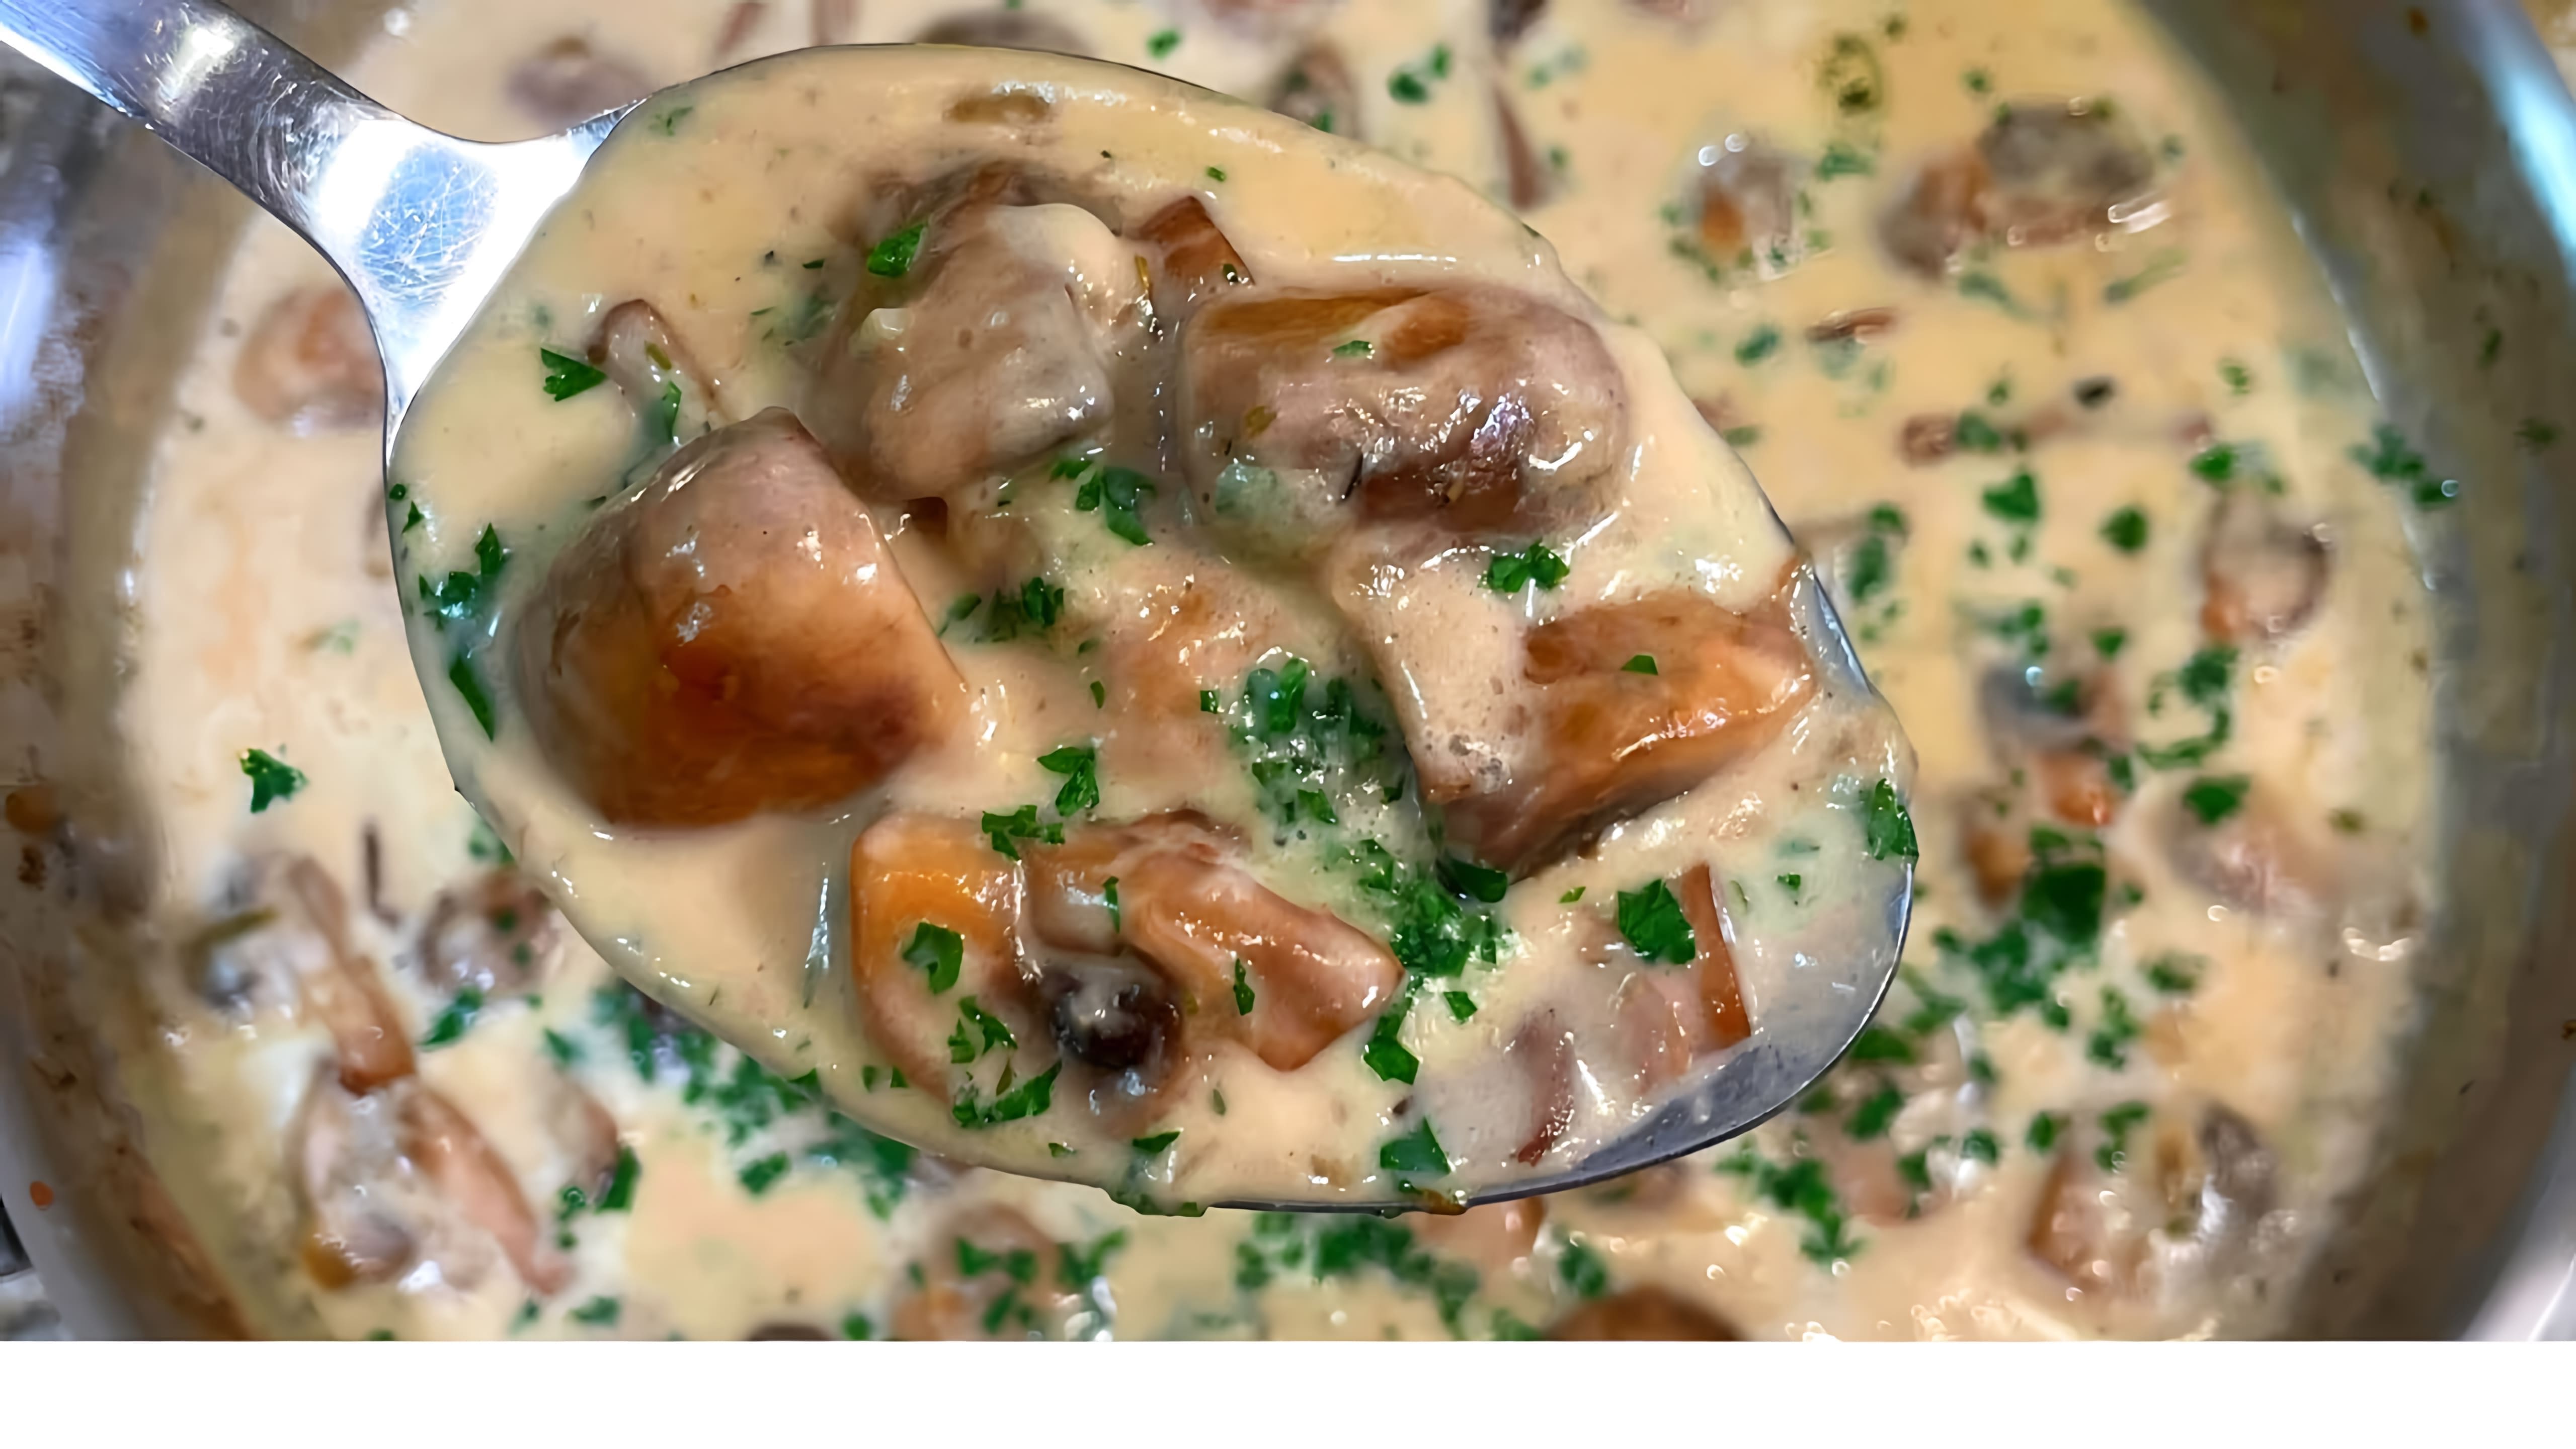 Видео рецепт кремового соуса из грибов, который можно подавать с пастой, мясом, рисом или другими блюдами